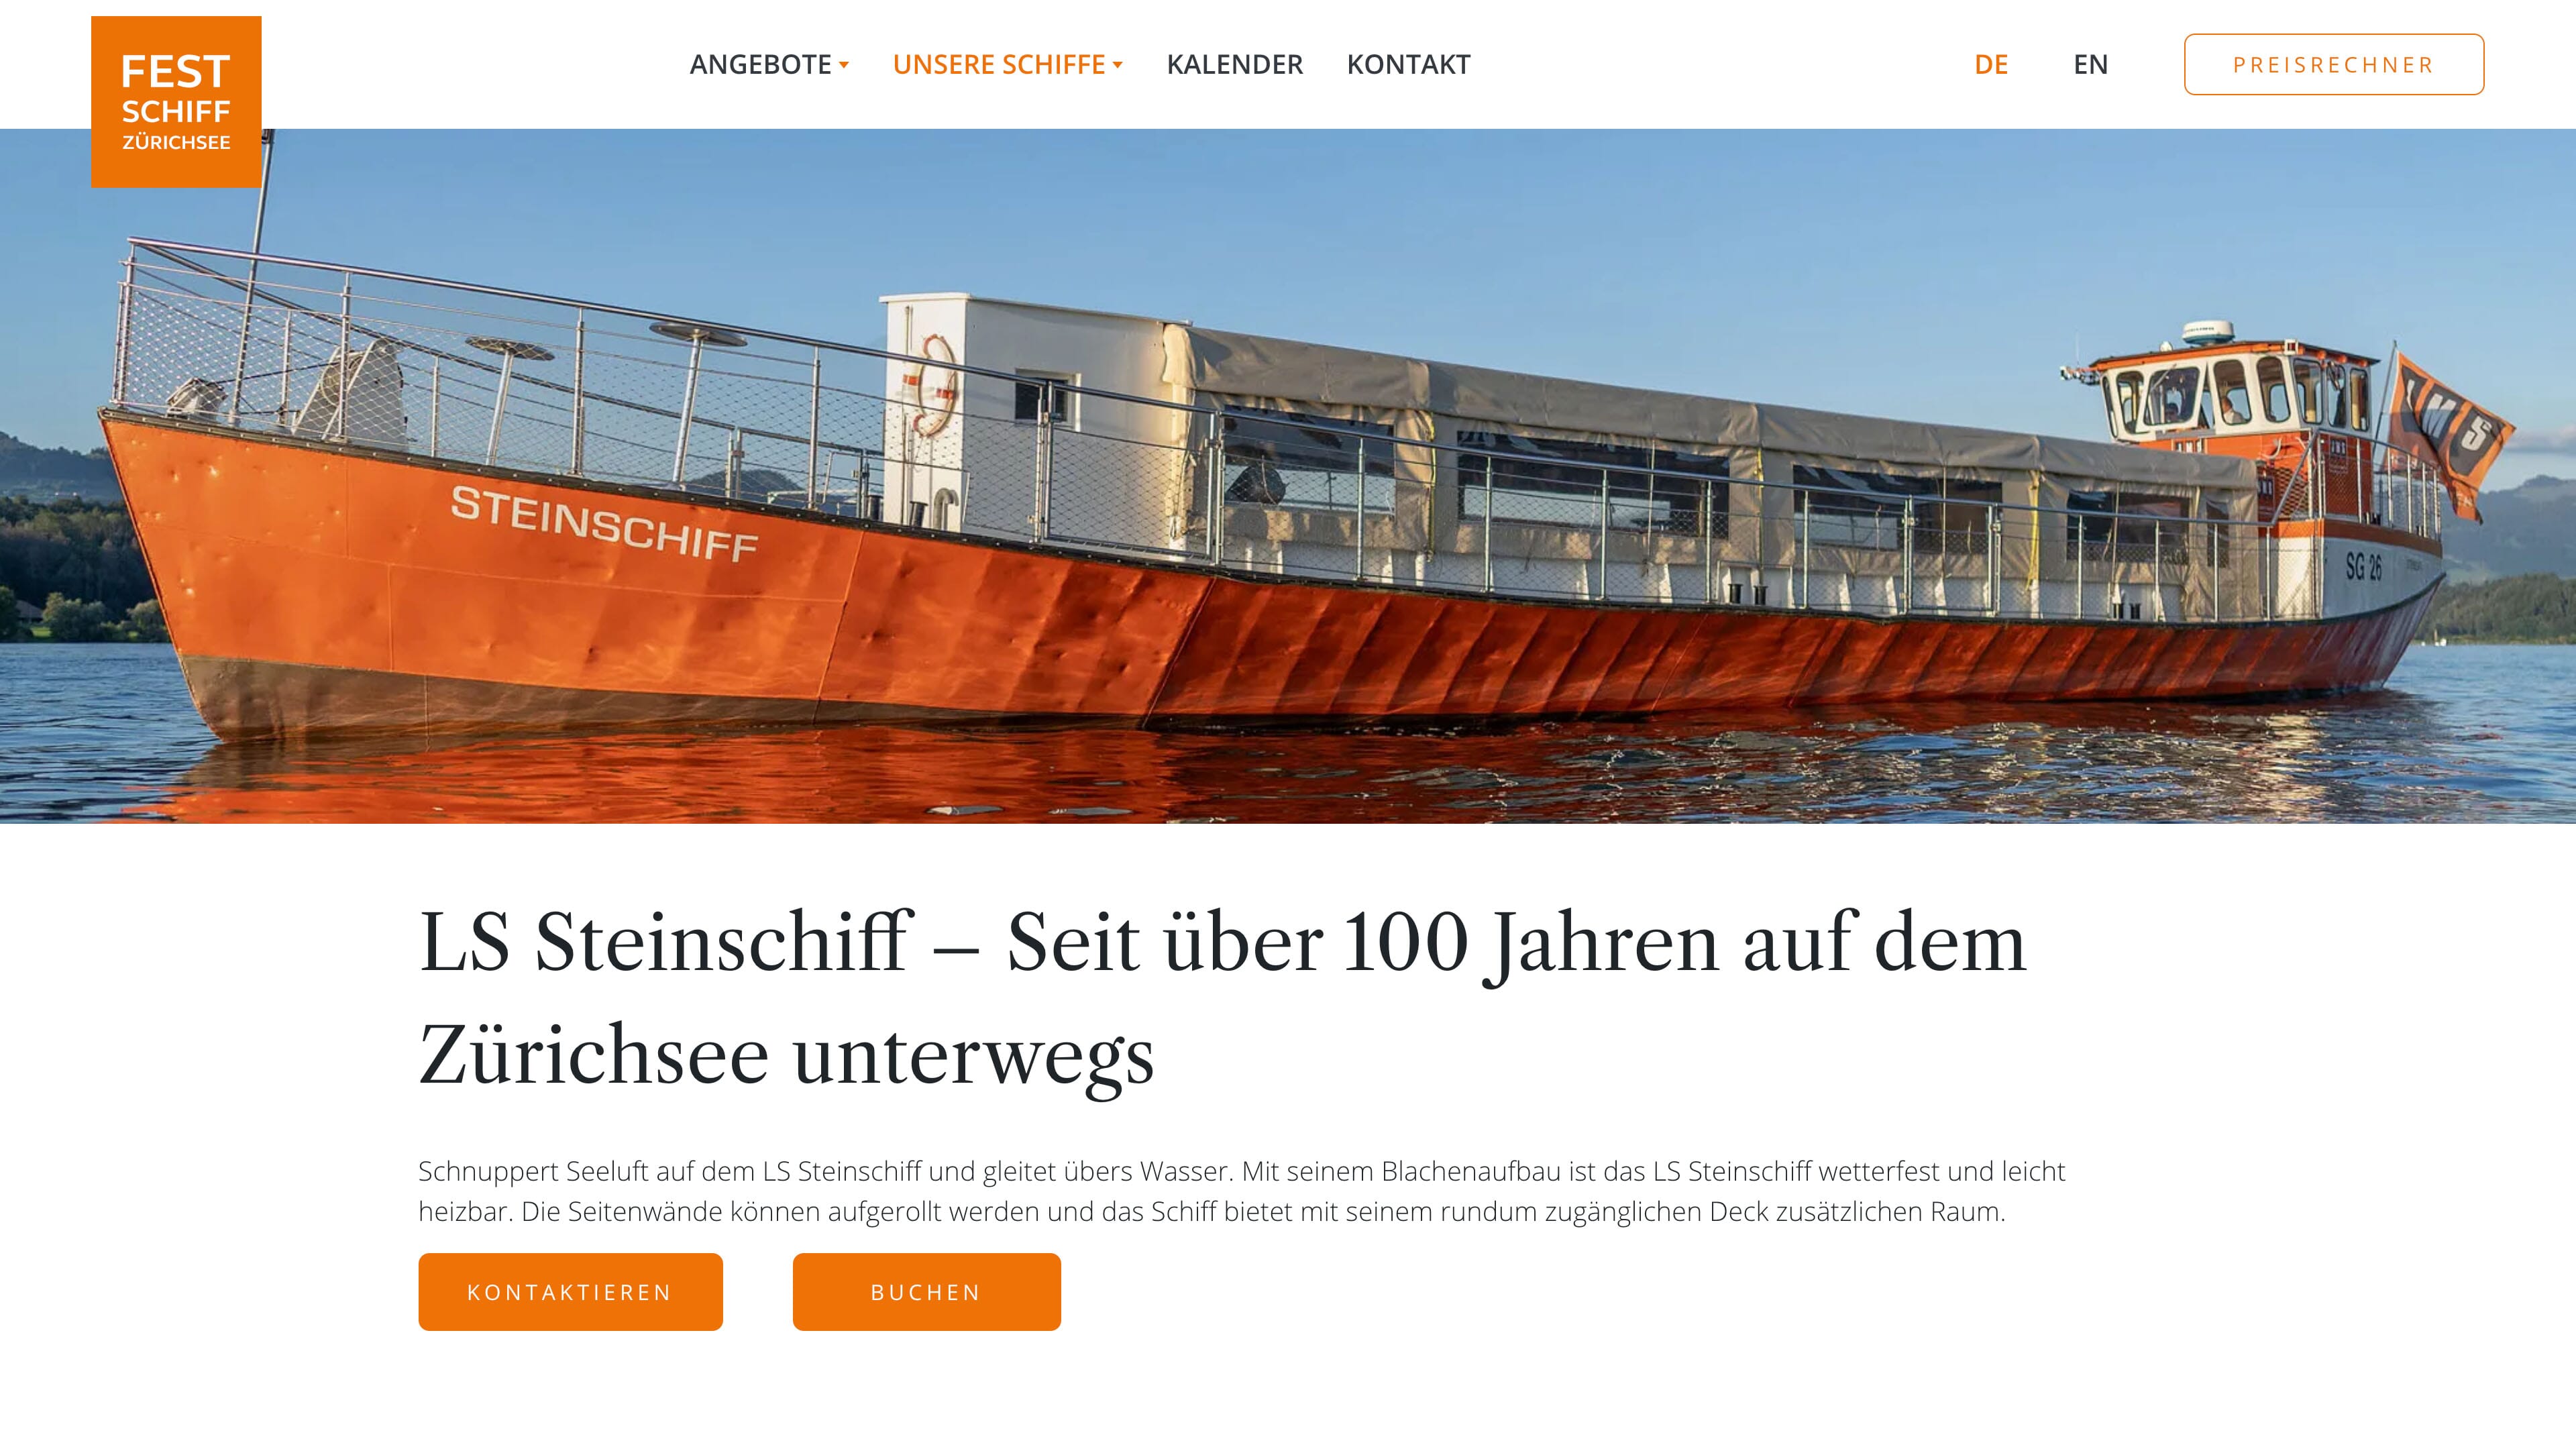 Website Festschiff Schmerikon